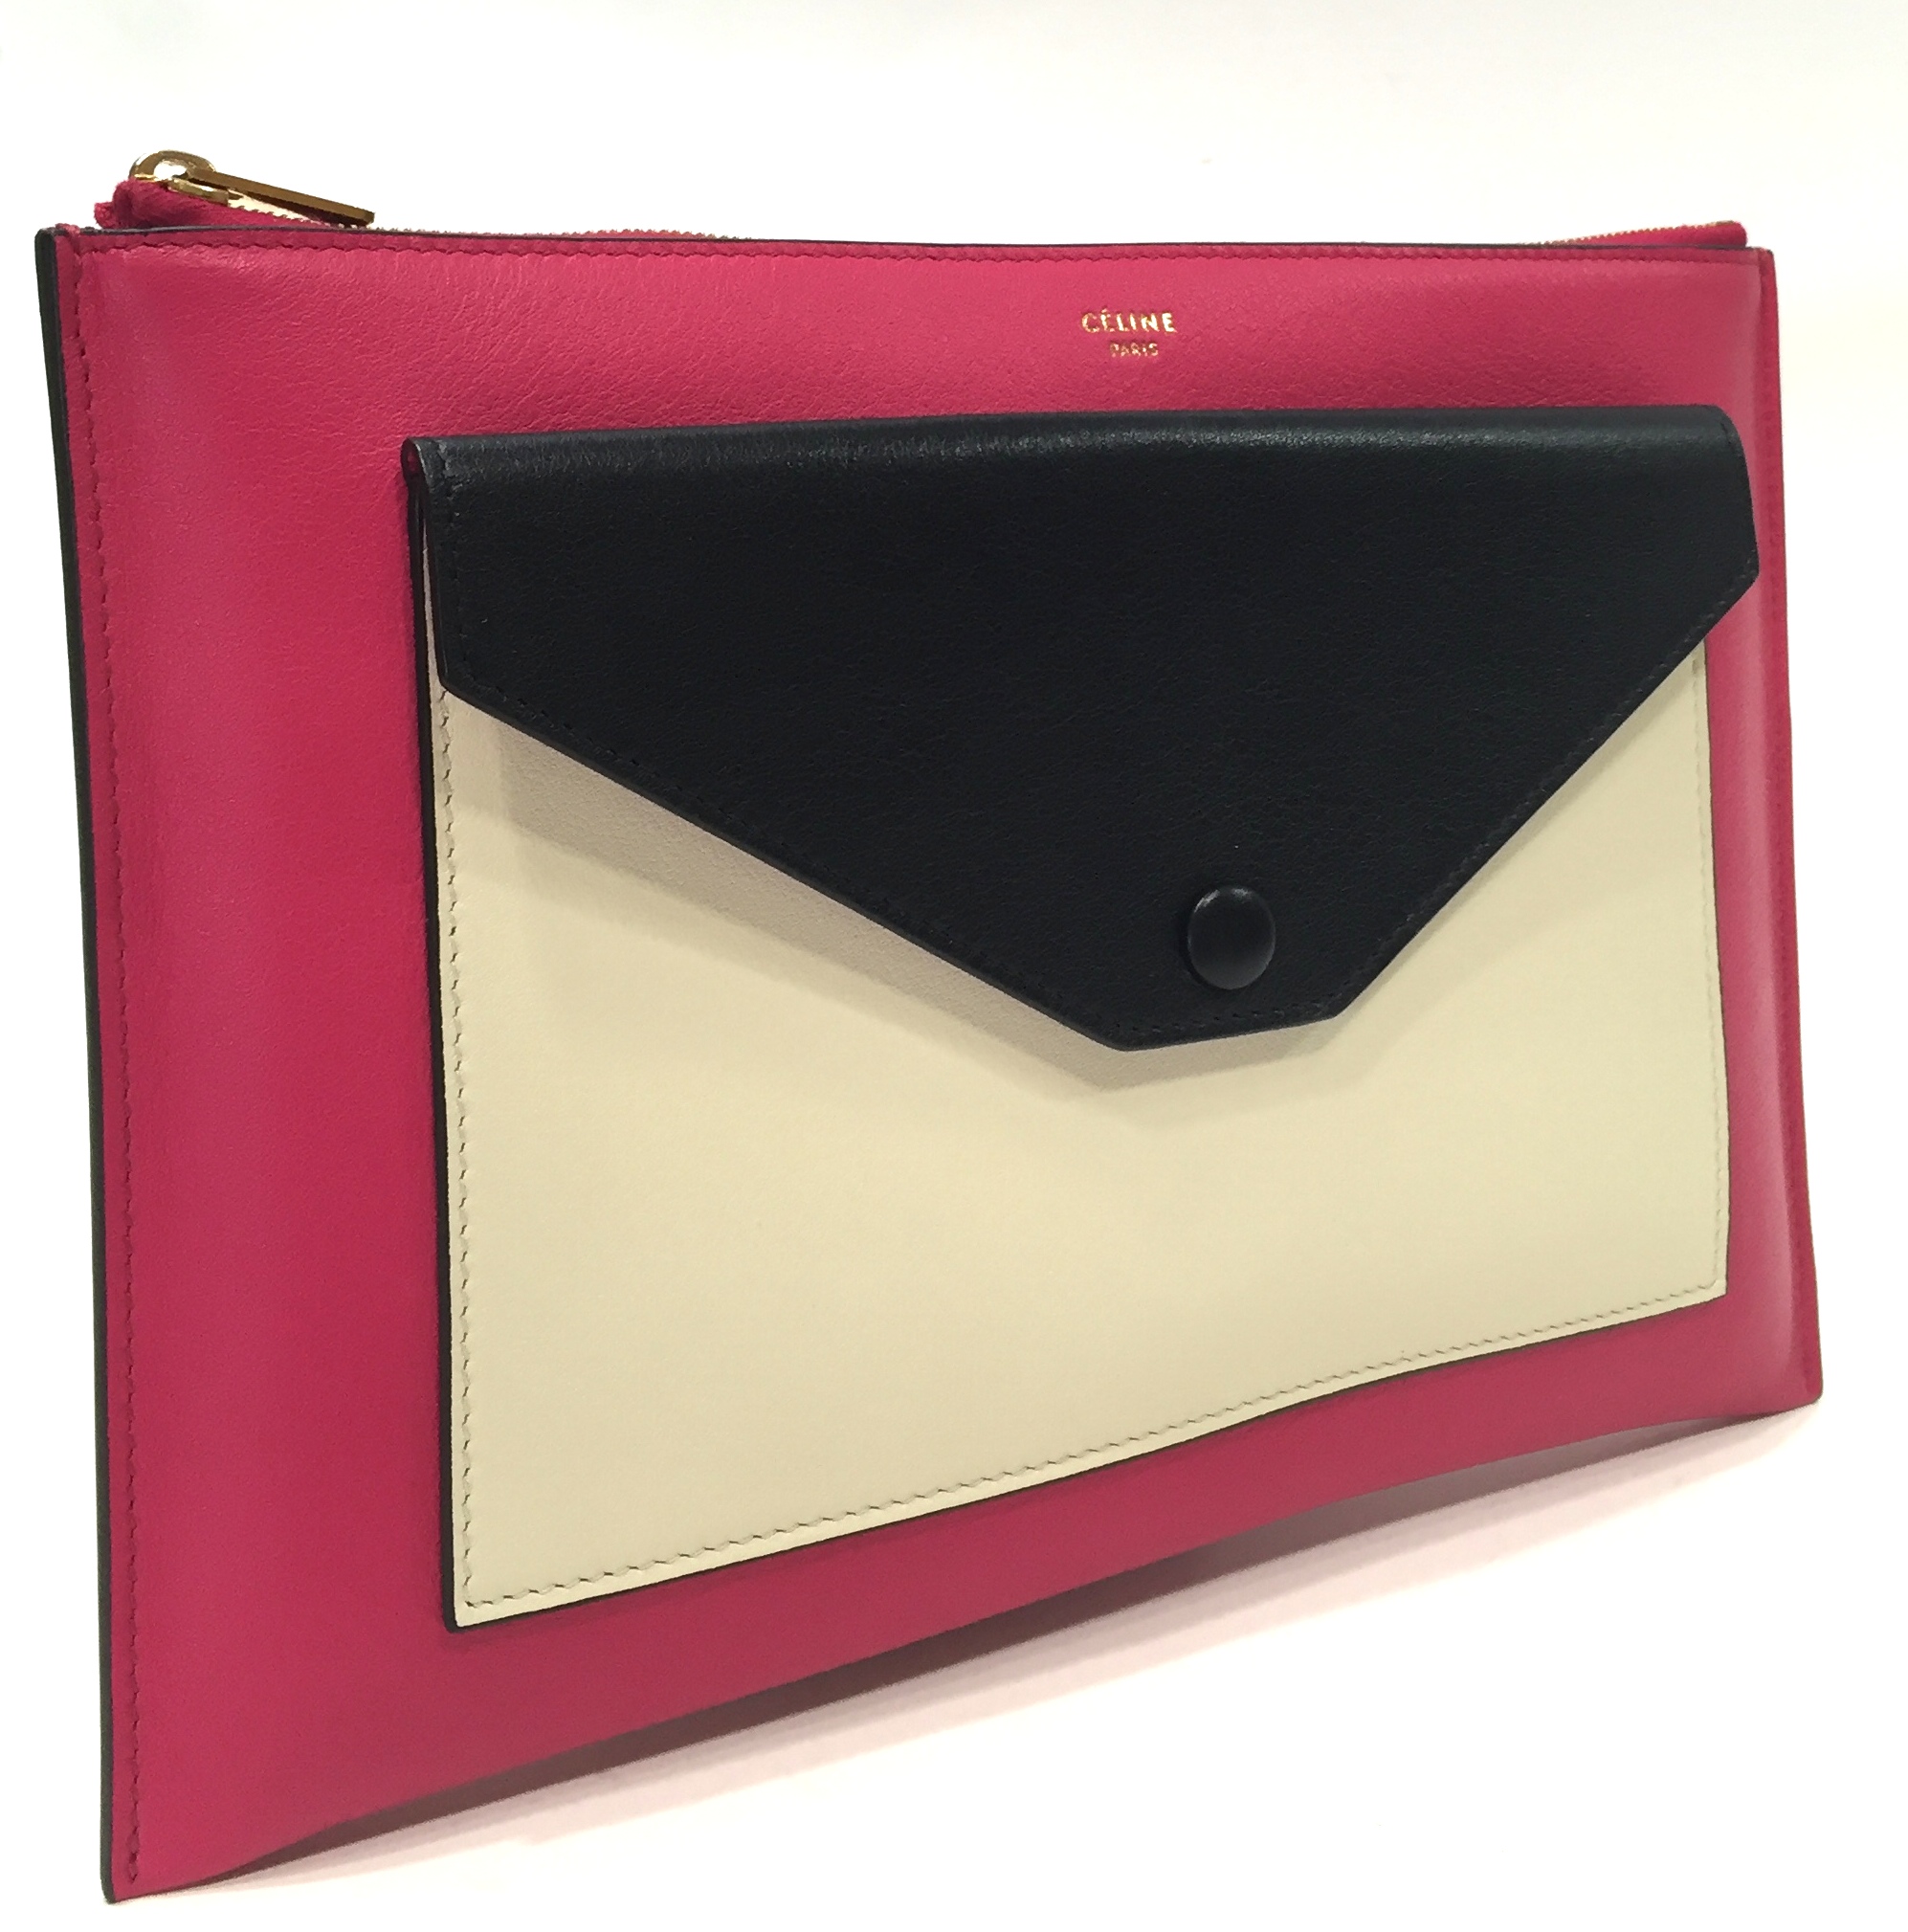 celine shopping online - celine pocket leather handbag